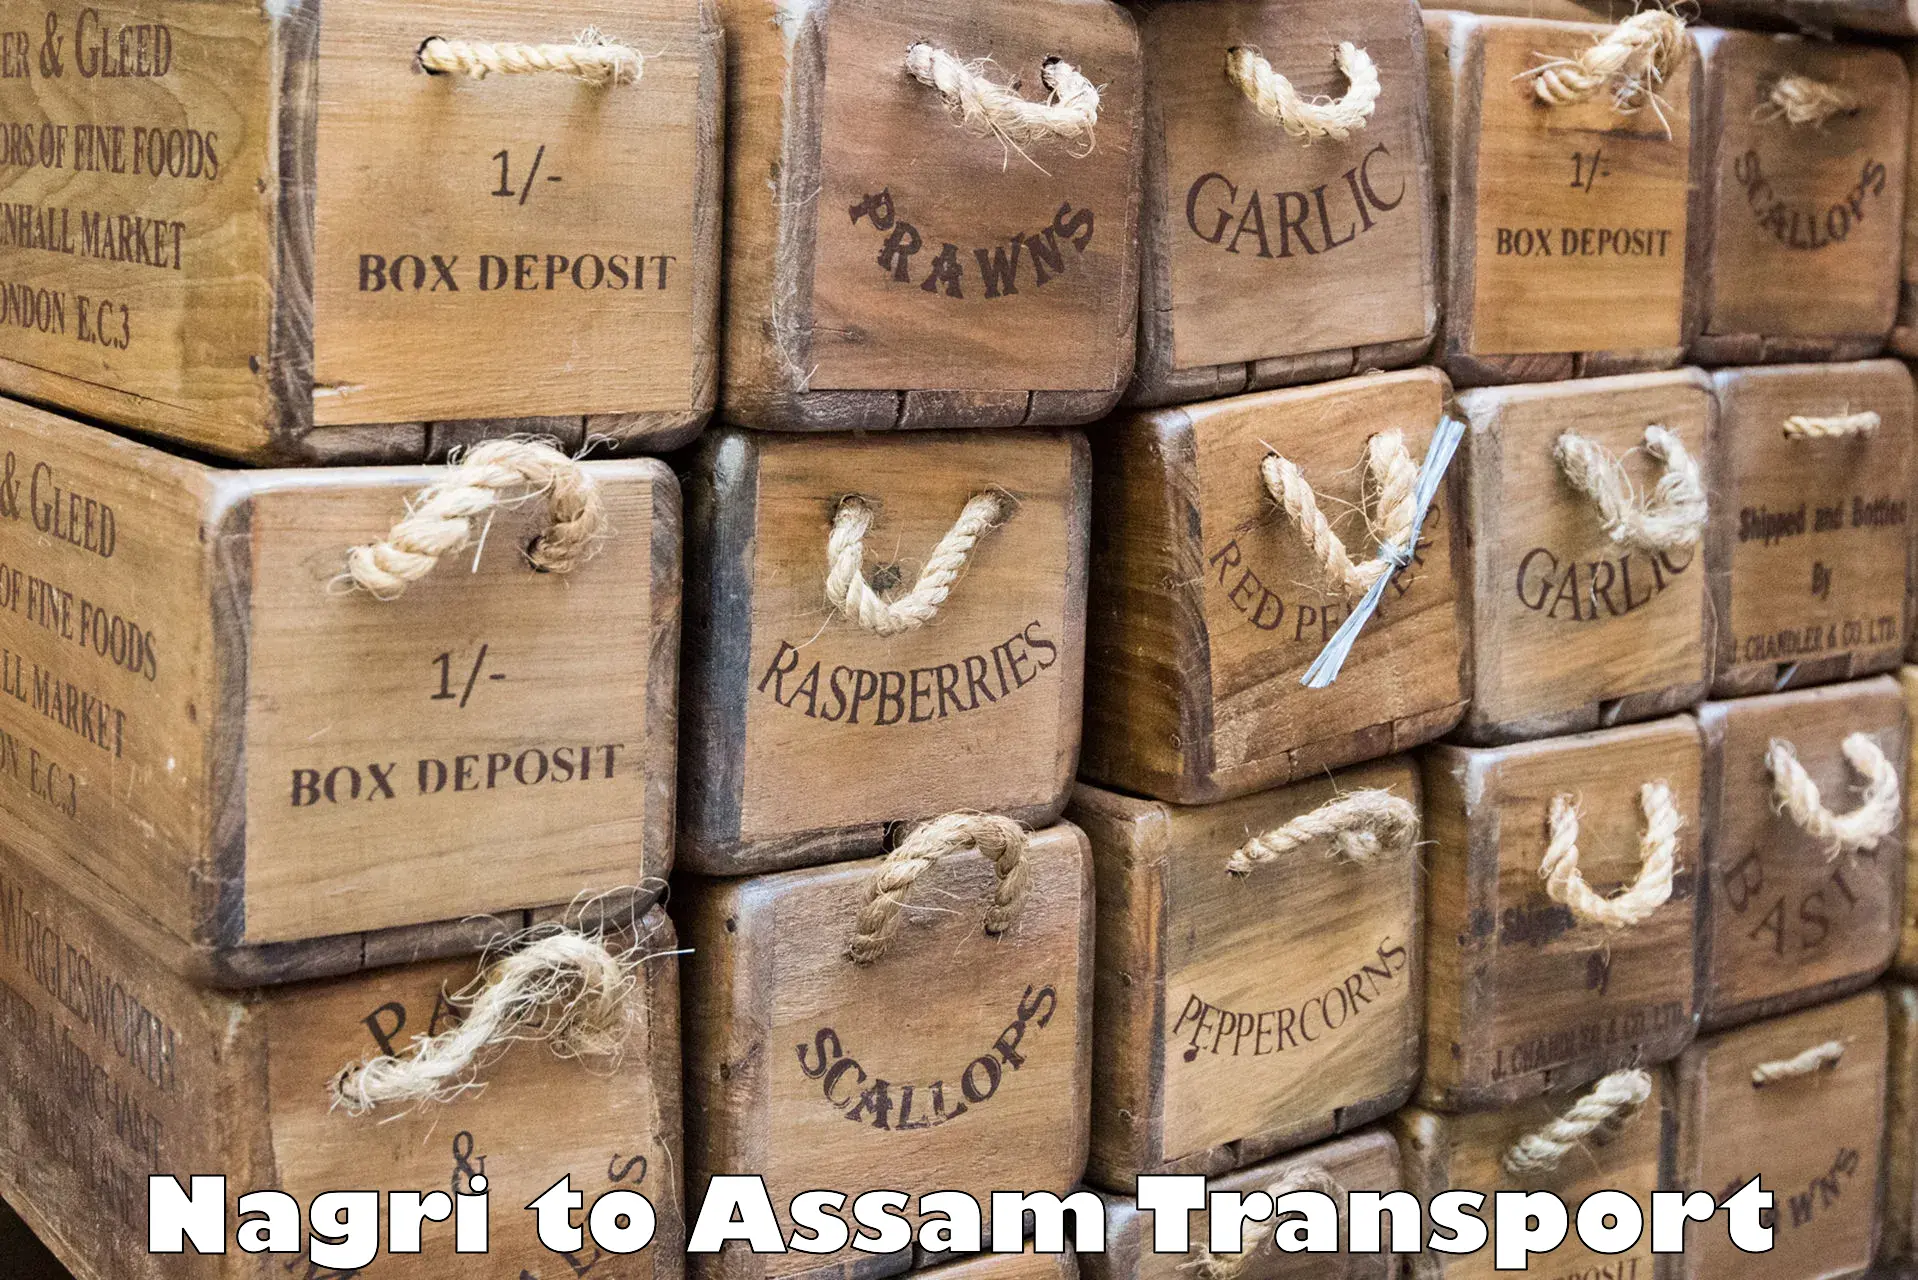 Nearest transport service Nagri to Assam